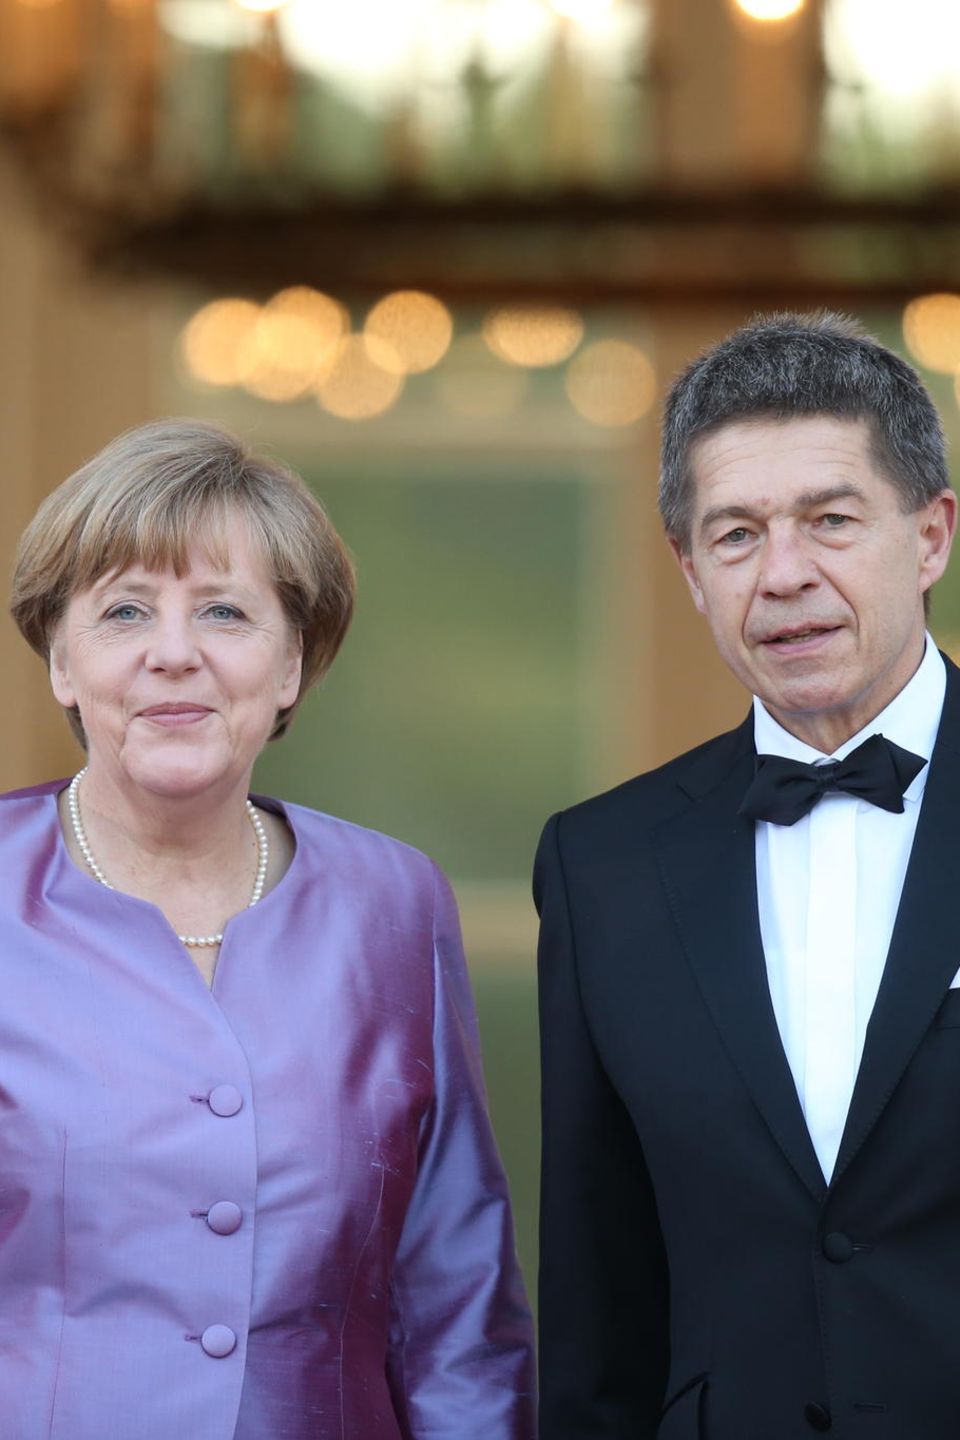 Beide brennen leidenschaftlich für ihre Berufe. Kanzlerin Angela Merkel und ihr Mann, der Wissenschaftler Joachim Sauer.